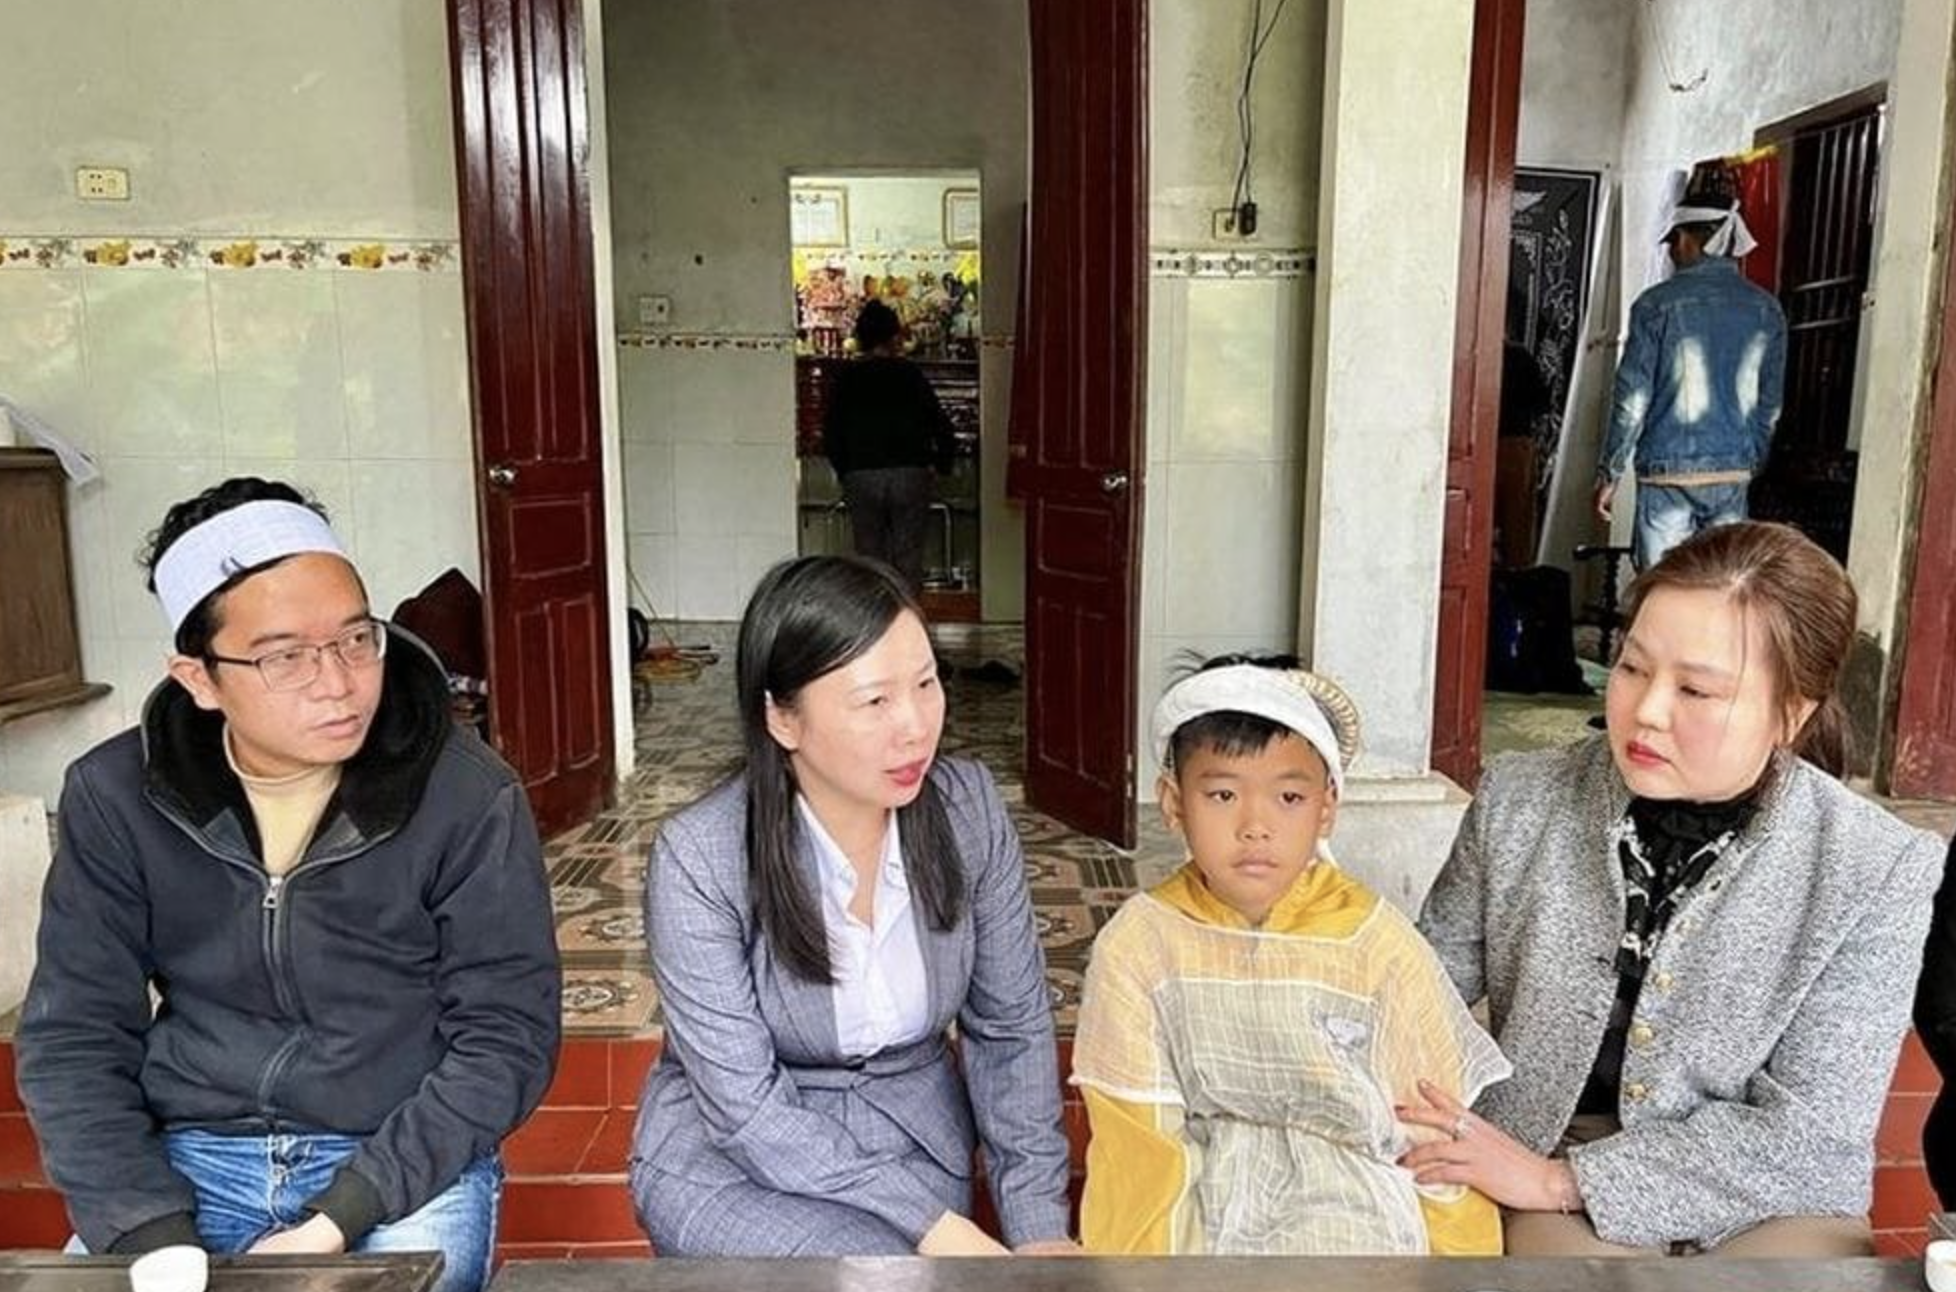  Ủy ban MTTQ tỉnh và đại diện lãnh đạo Hội LHPN tỉnh, huyện Vĩnh Lộc đã đến thăm hỏi gia đình có hai vợ chồng bị tử vong do đuối nước; đồng thời trao tiền hỗ trợ của tỉnh cho gia đình để lo hậu sự